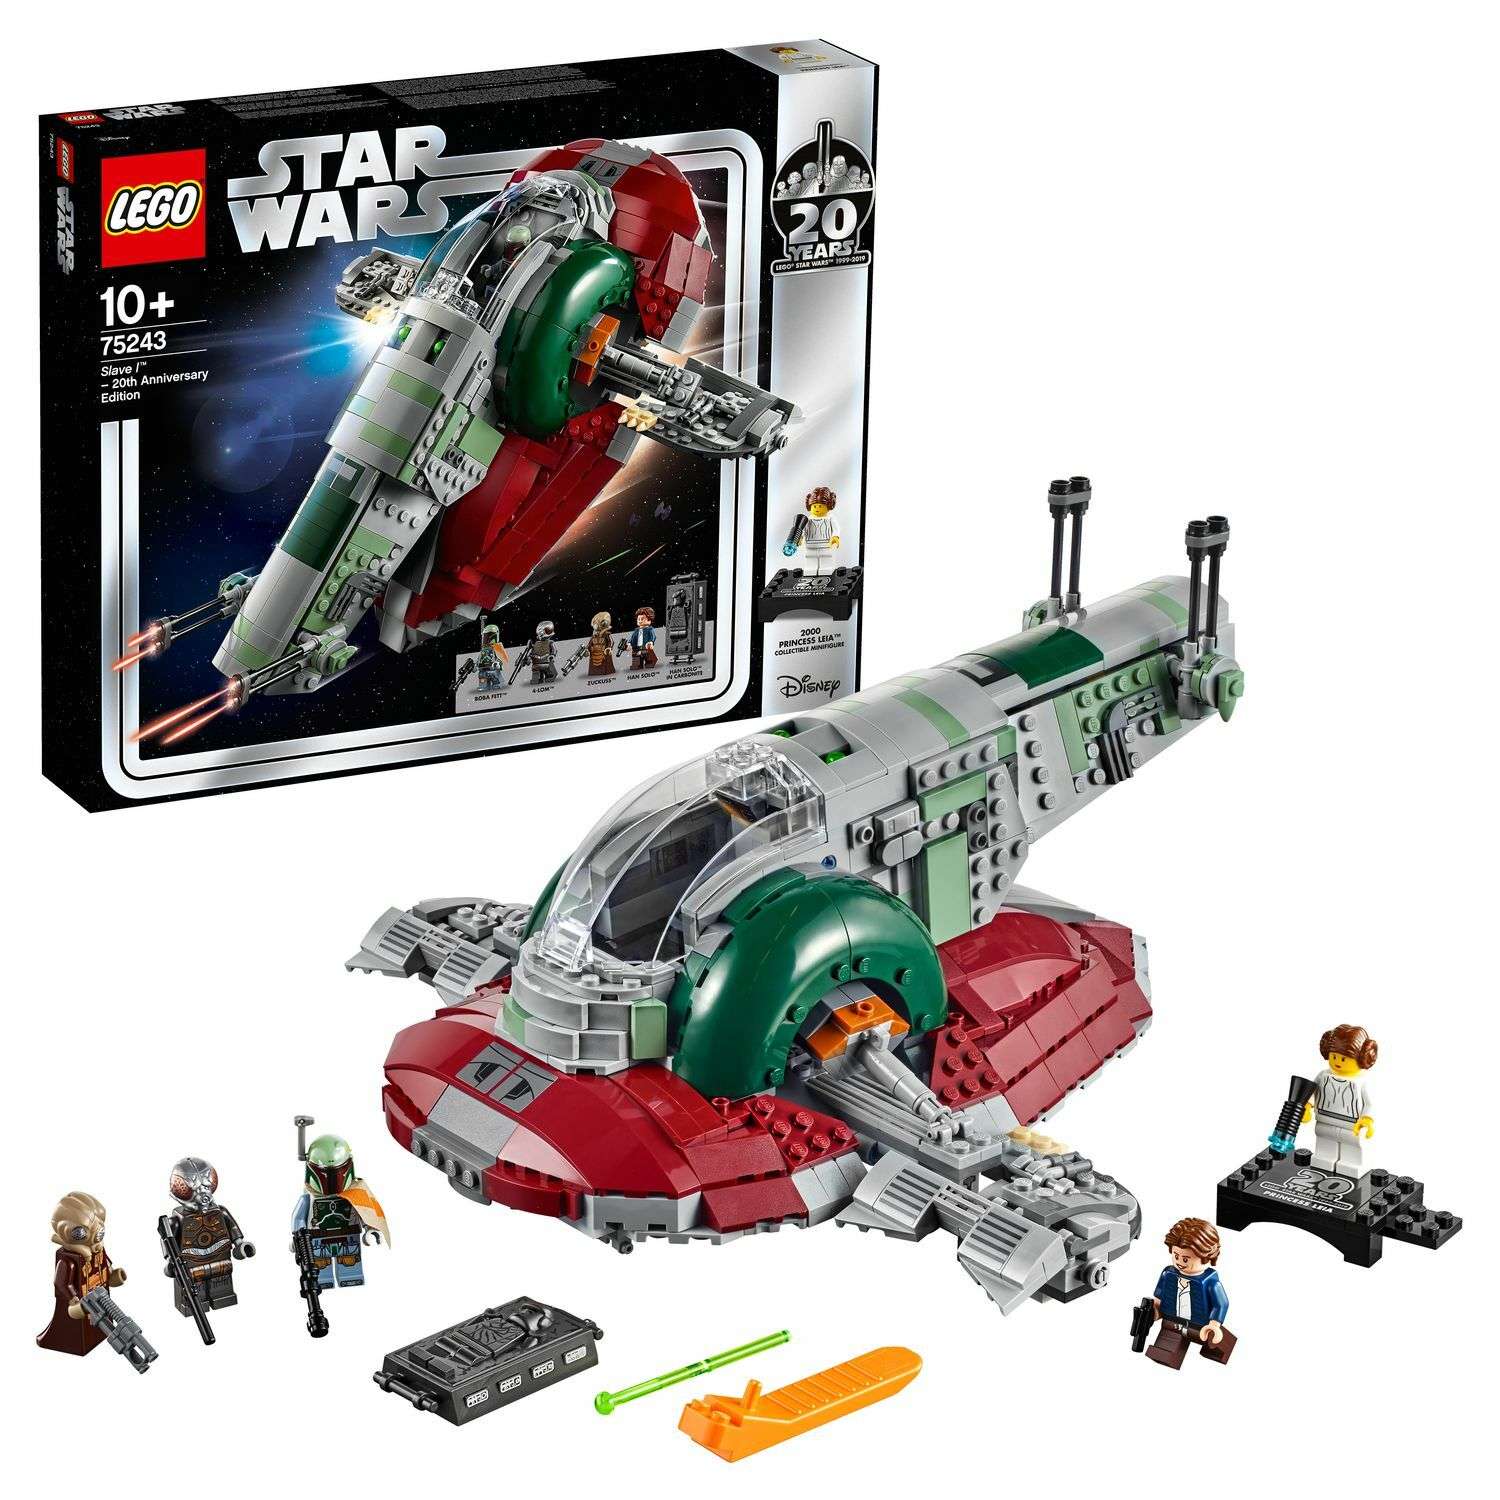 Конструктор LEGO Star Wars Раб I выпуск к 20-летнему юбилею 75243 - фото 1